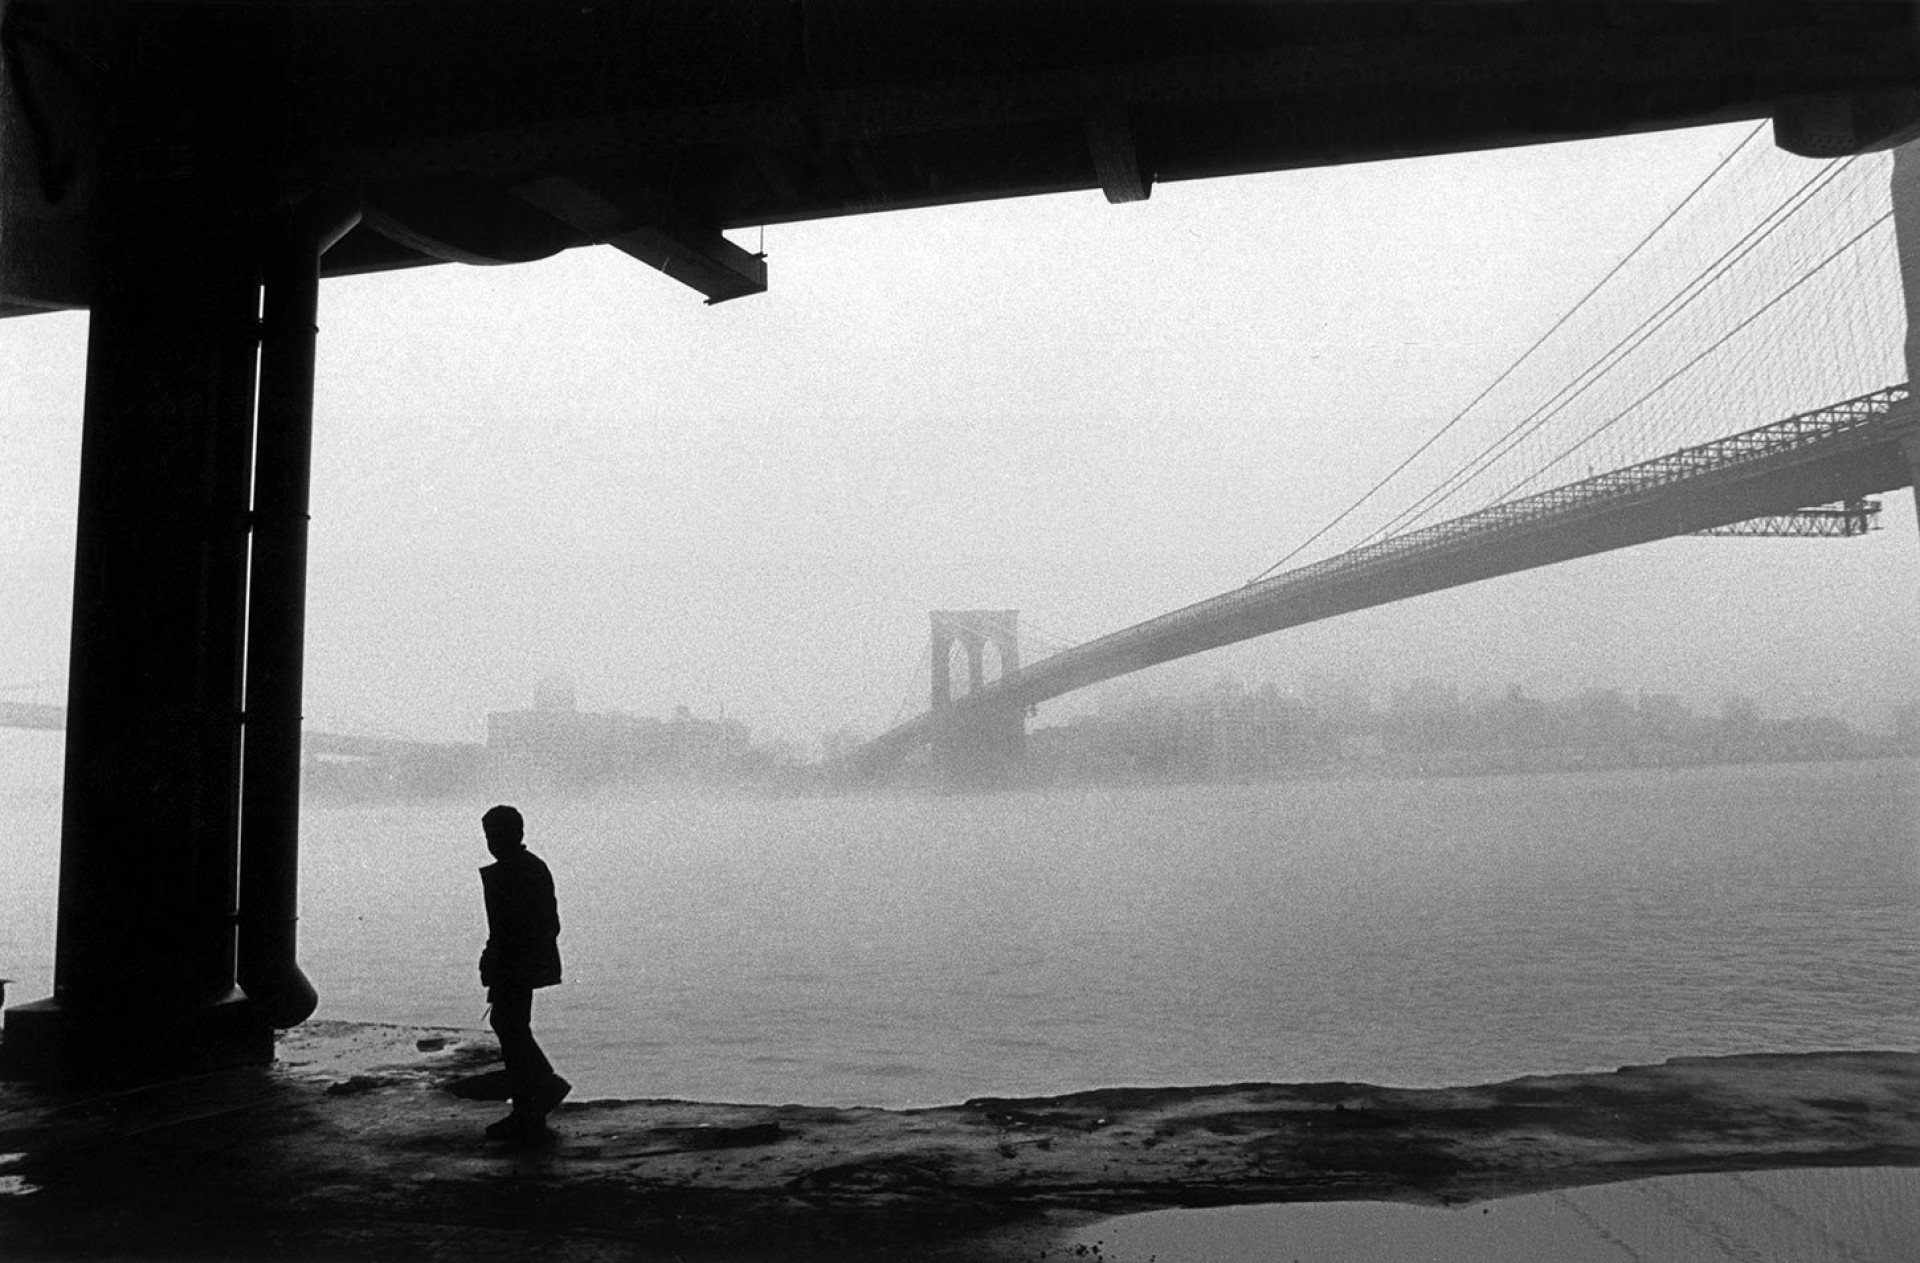 Манхэттенский мост в тумане. Ист-Ривер, Нью-Йорк, 1986. Фотограф Фердинандо Шанна